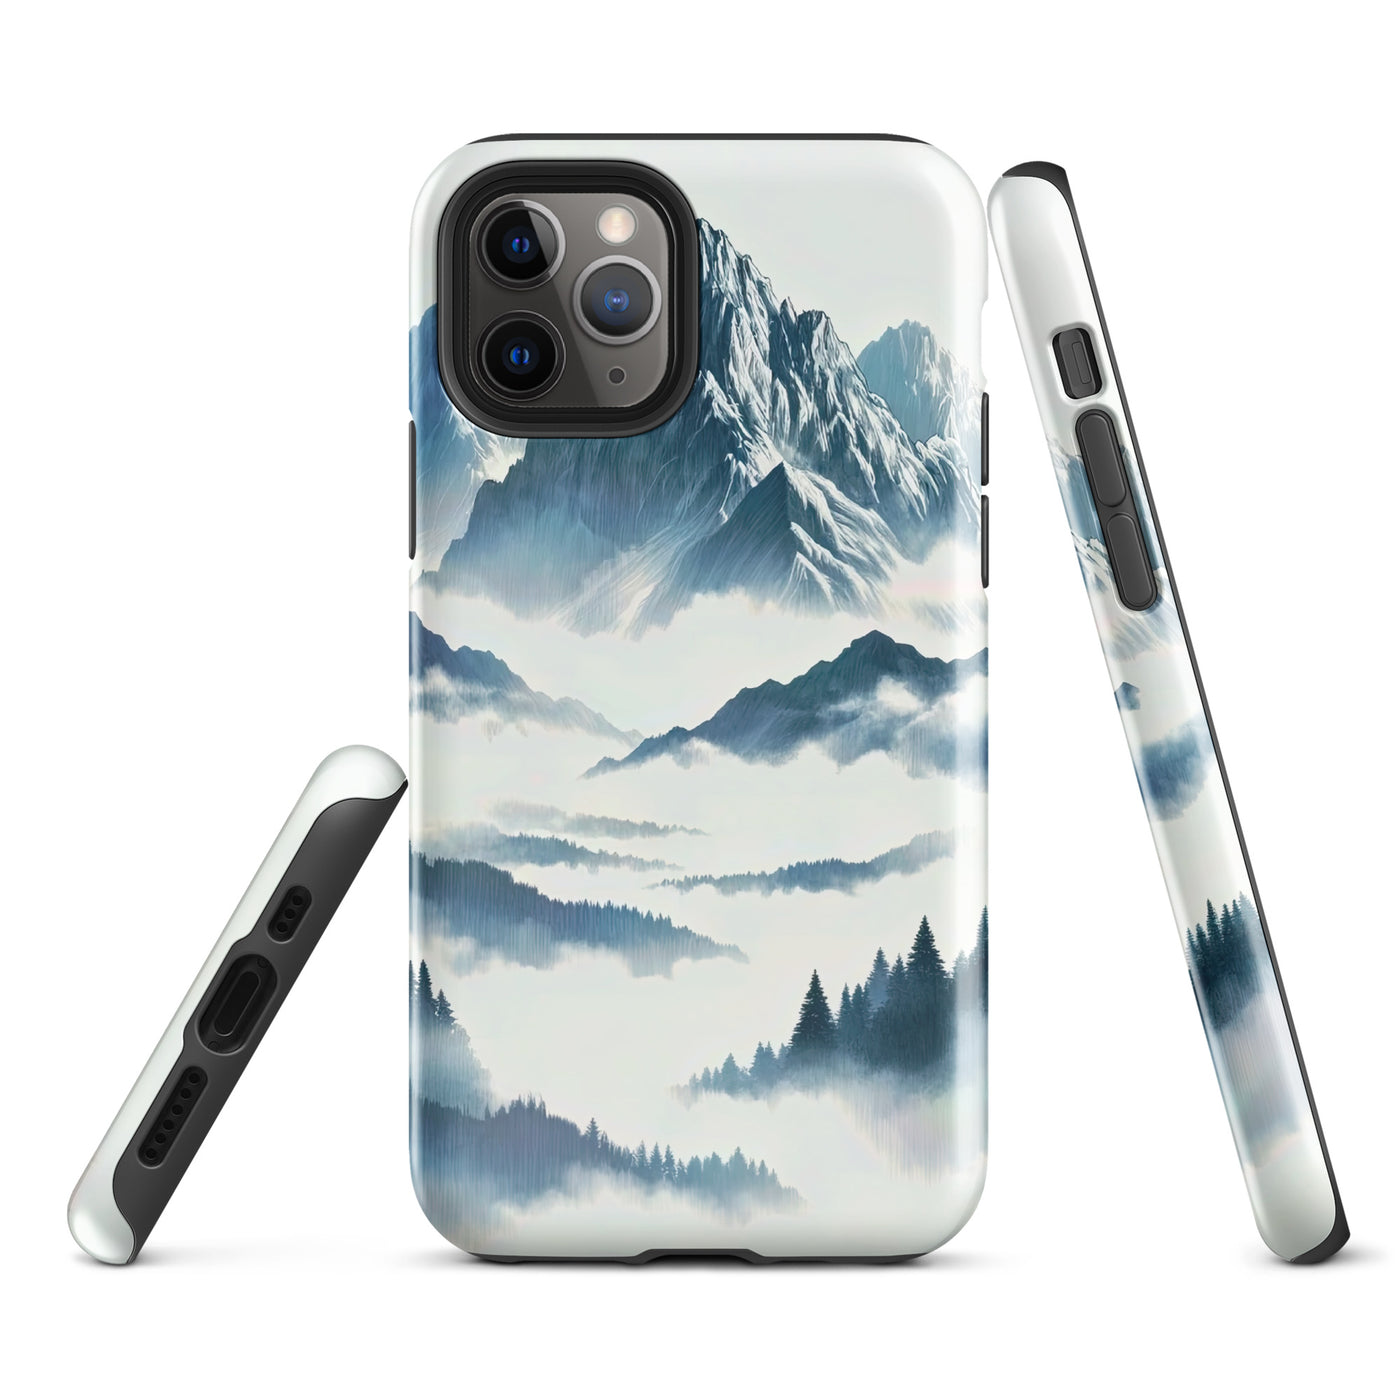 Nebeliger Alpenmorgen-Essenz, verdeckte Täler und Wälder - iPhone Schutzhülle (robust) berge xxx yyy zzz iPhone 11 Pro